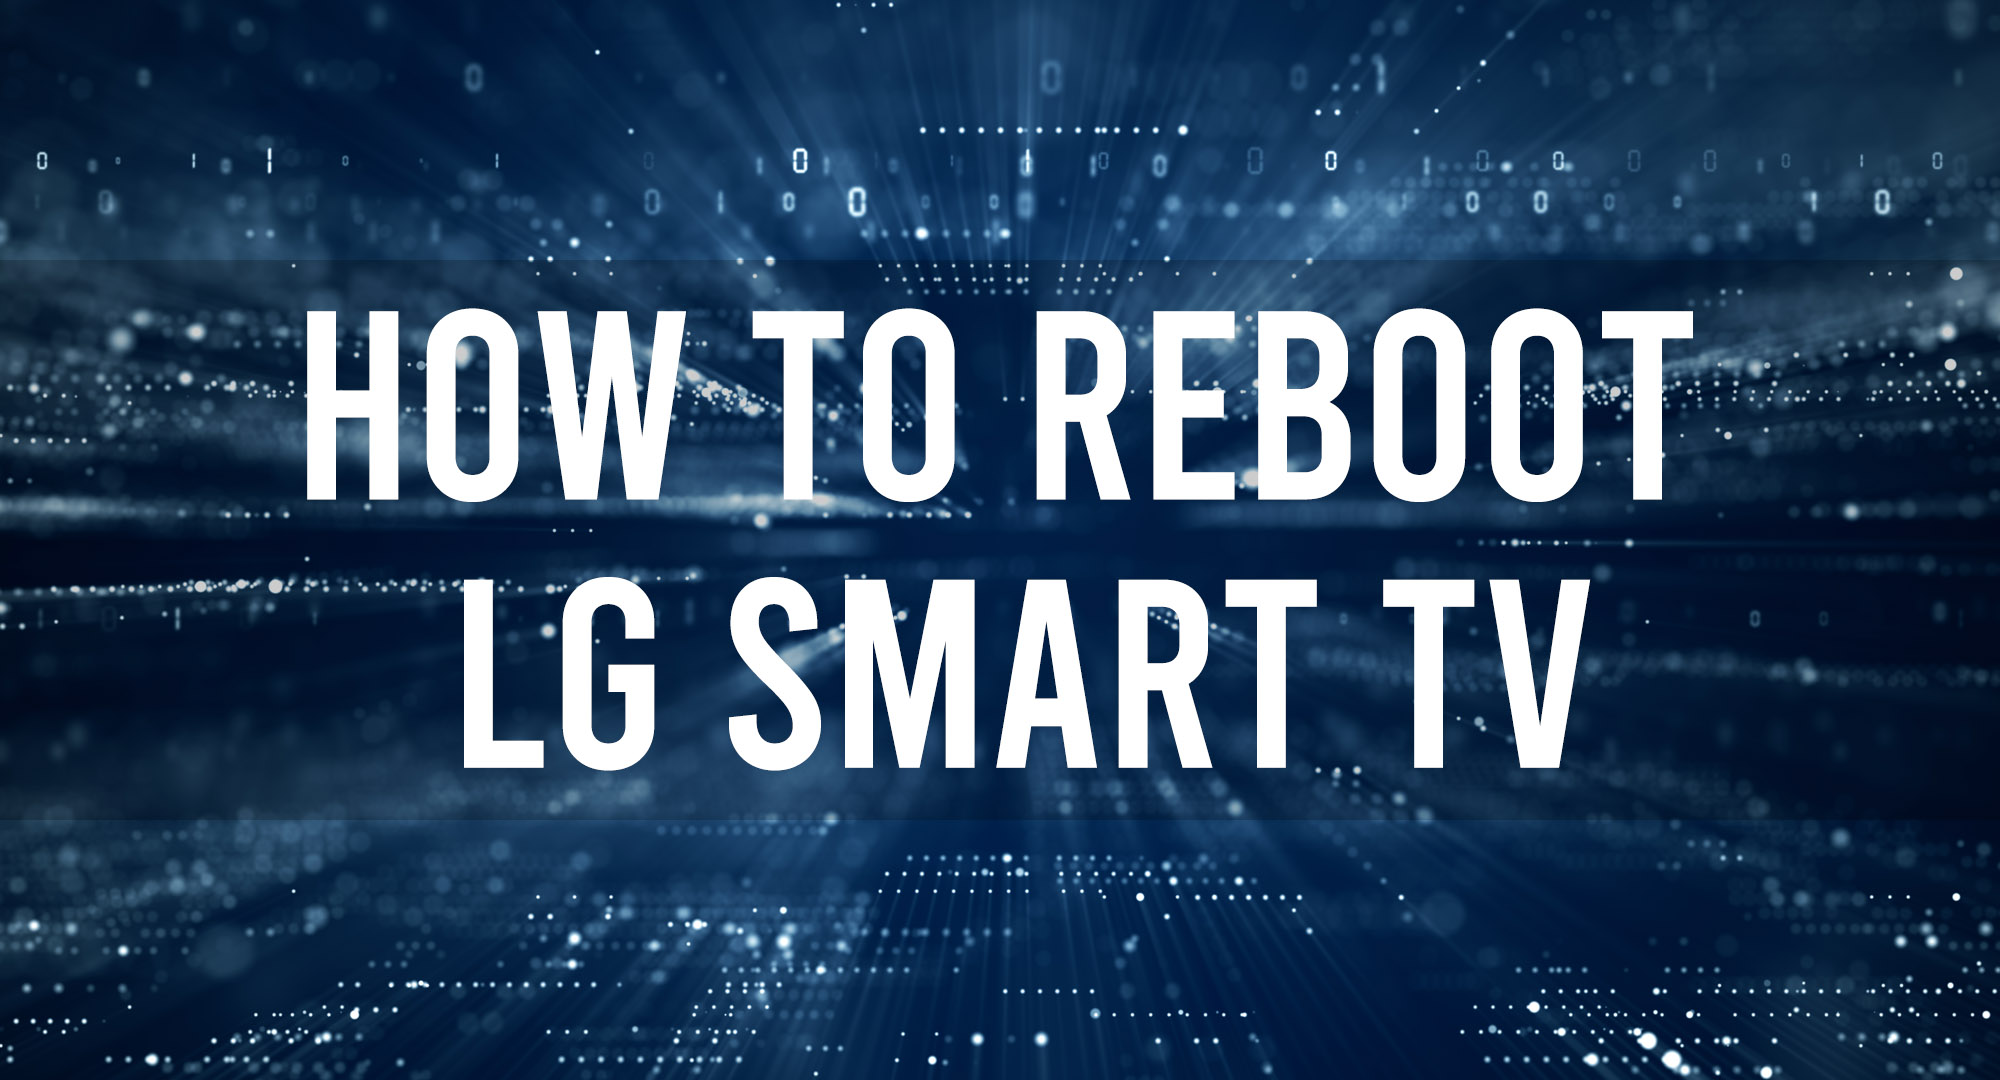 How to reboot LG Smart TV